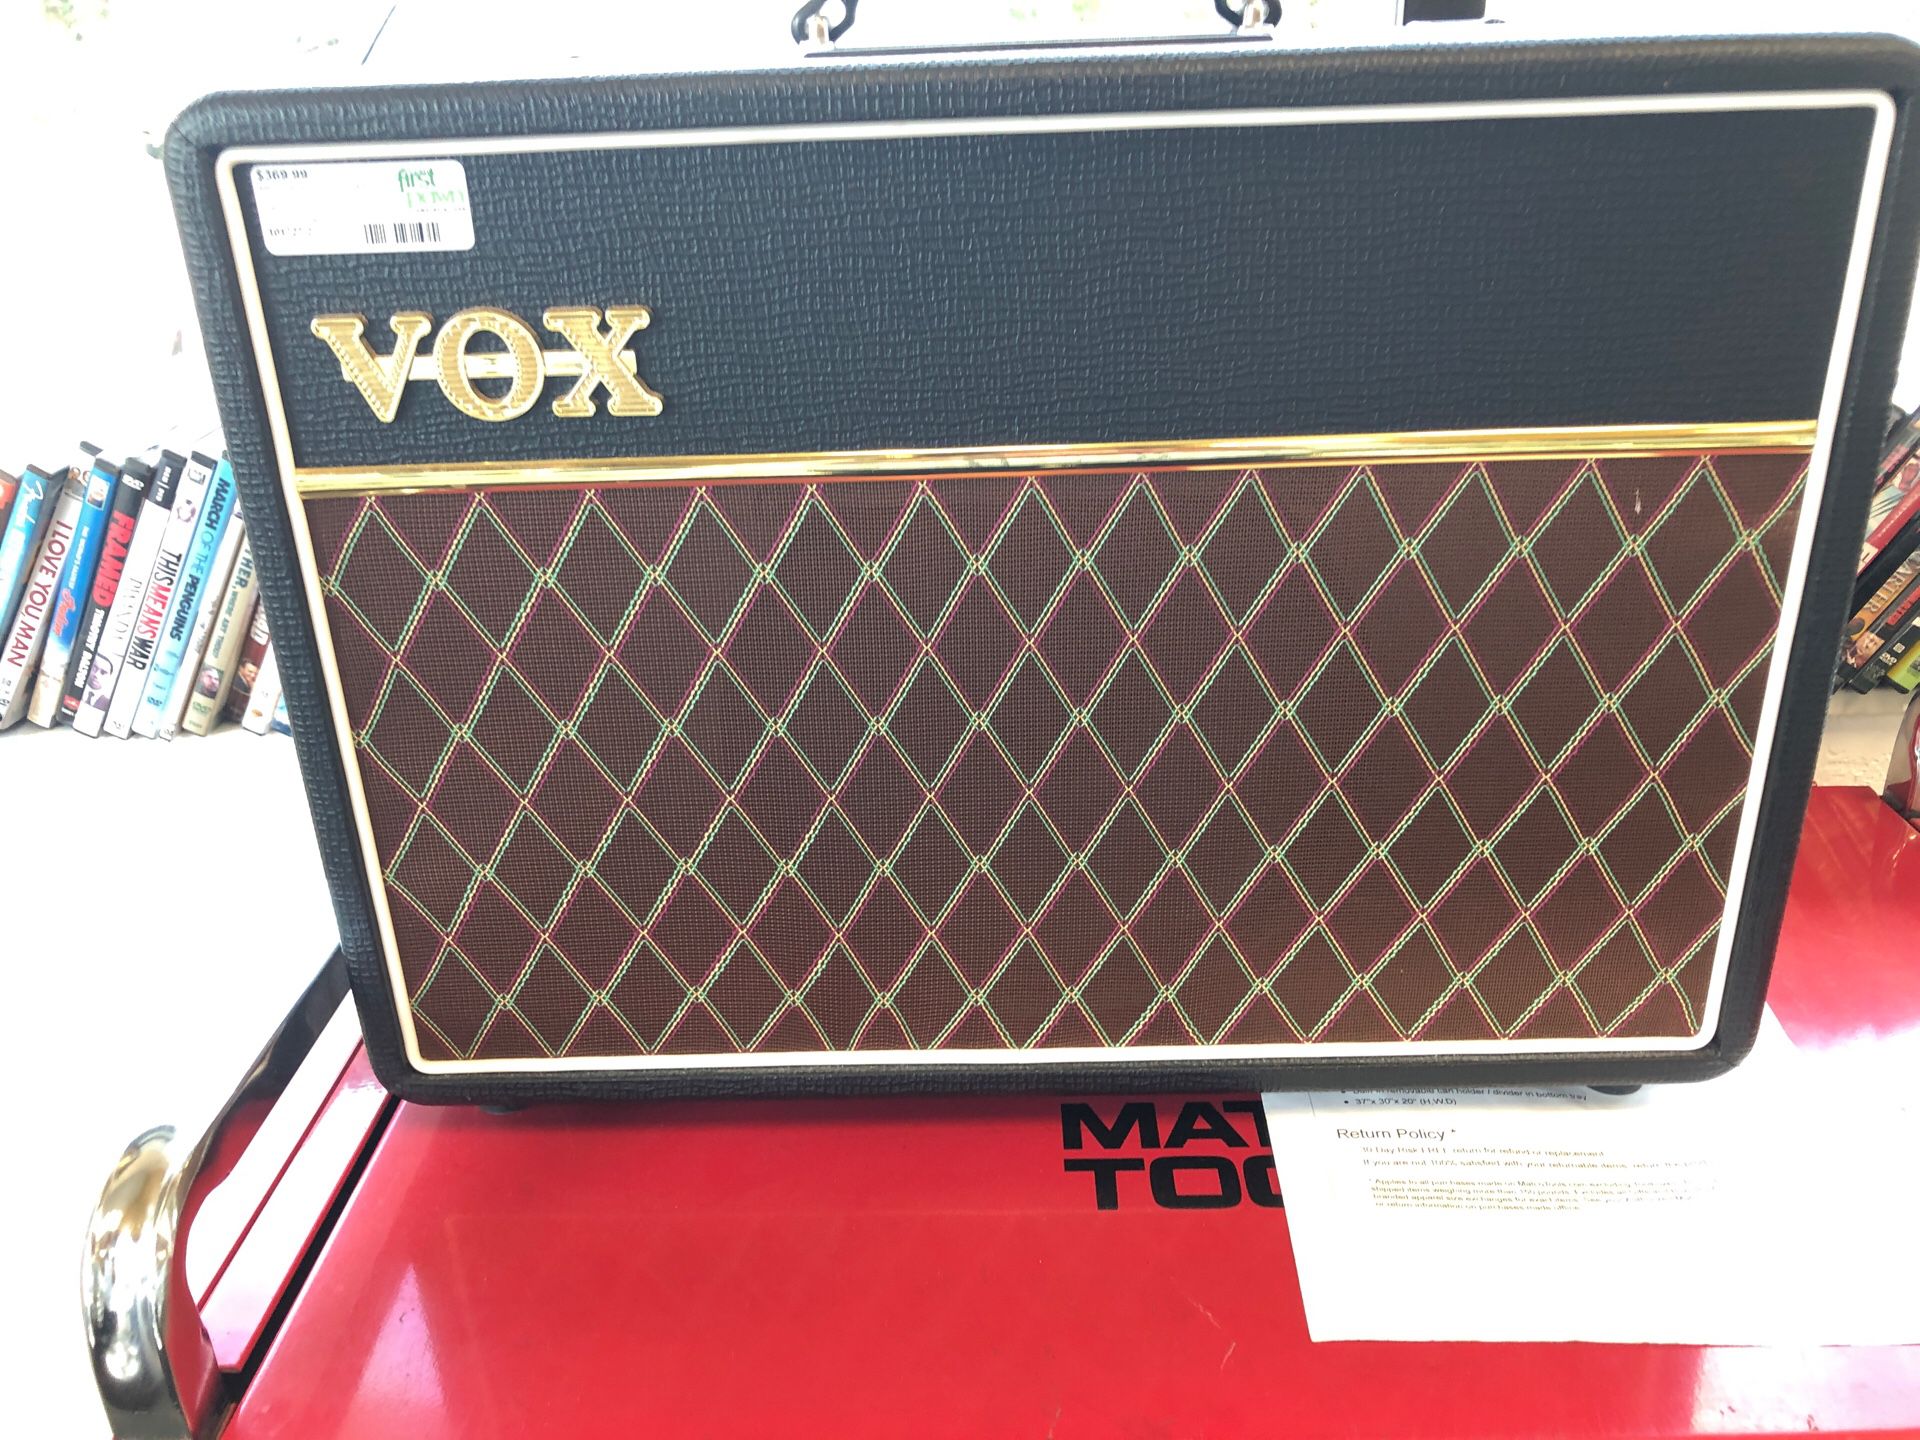 Vox tube amp